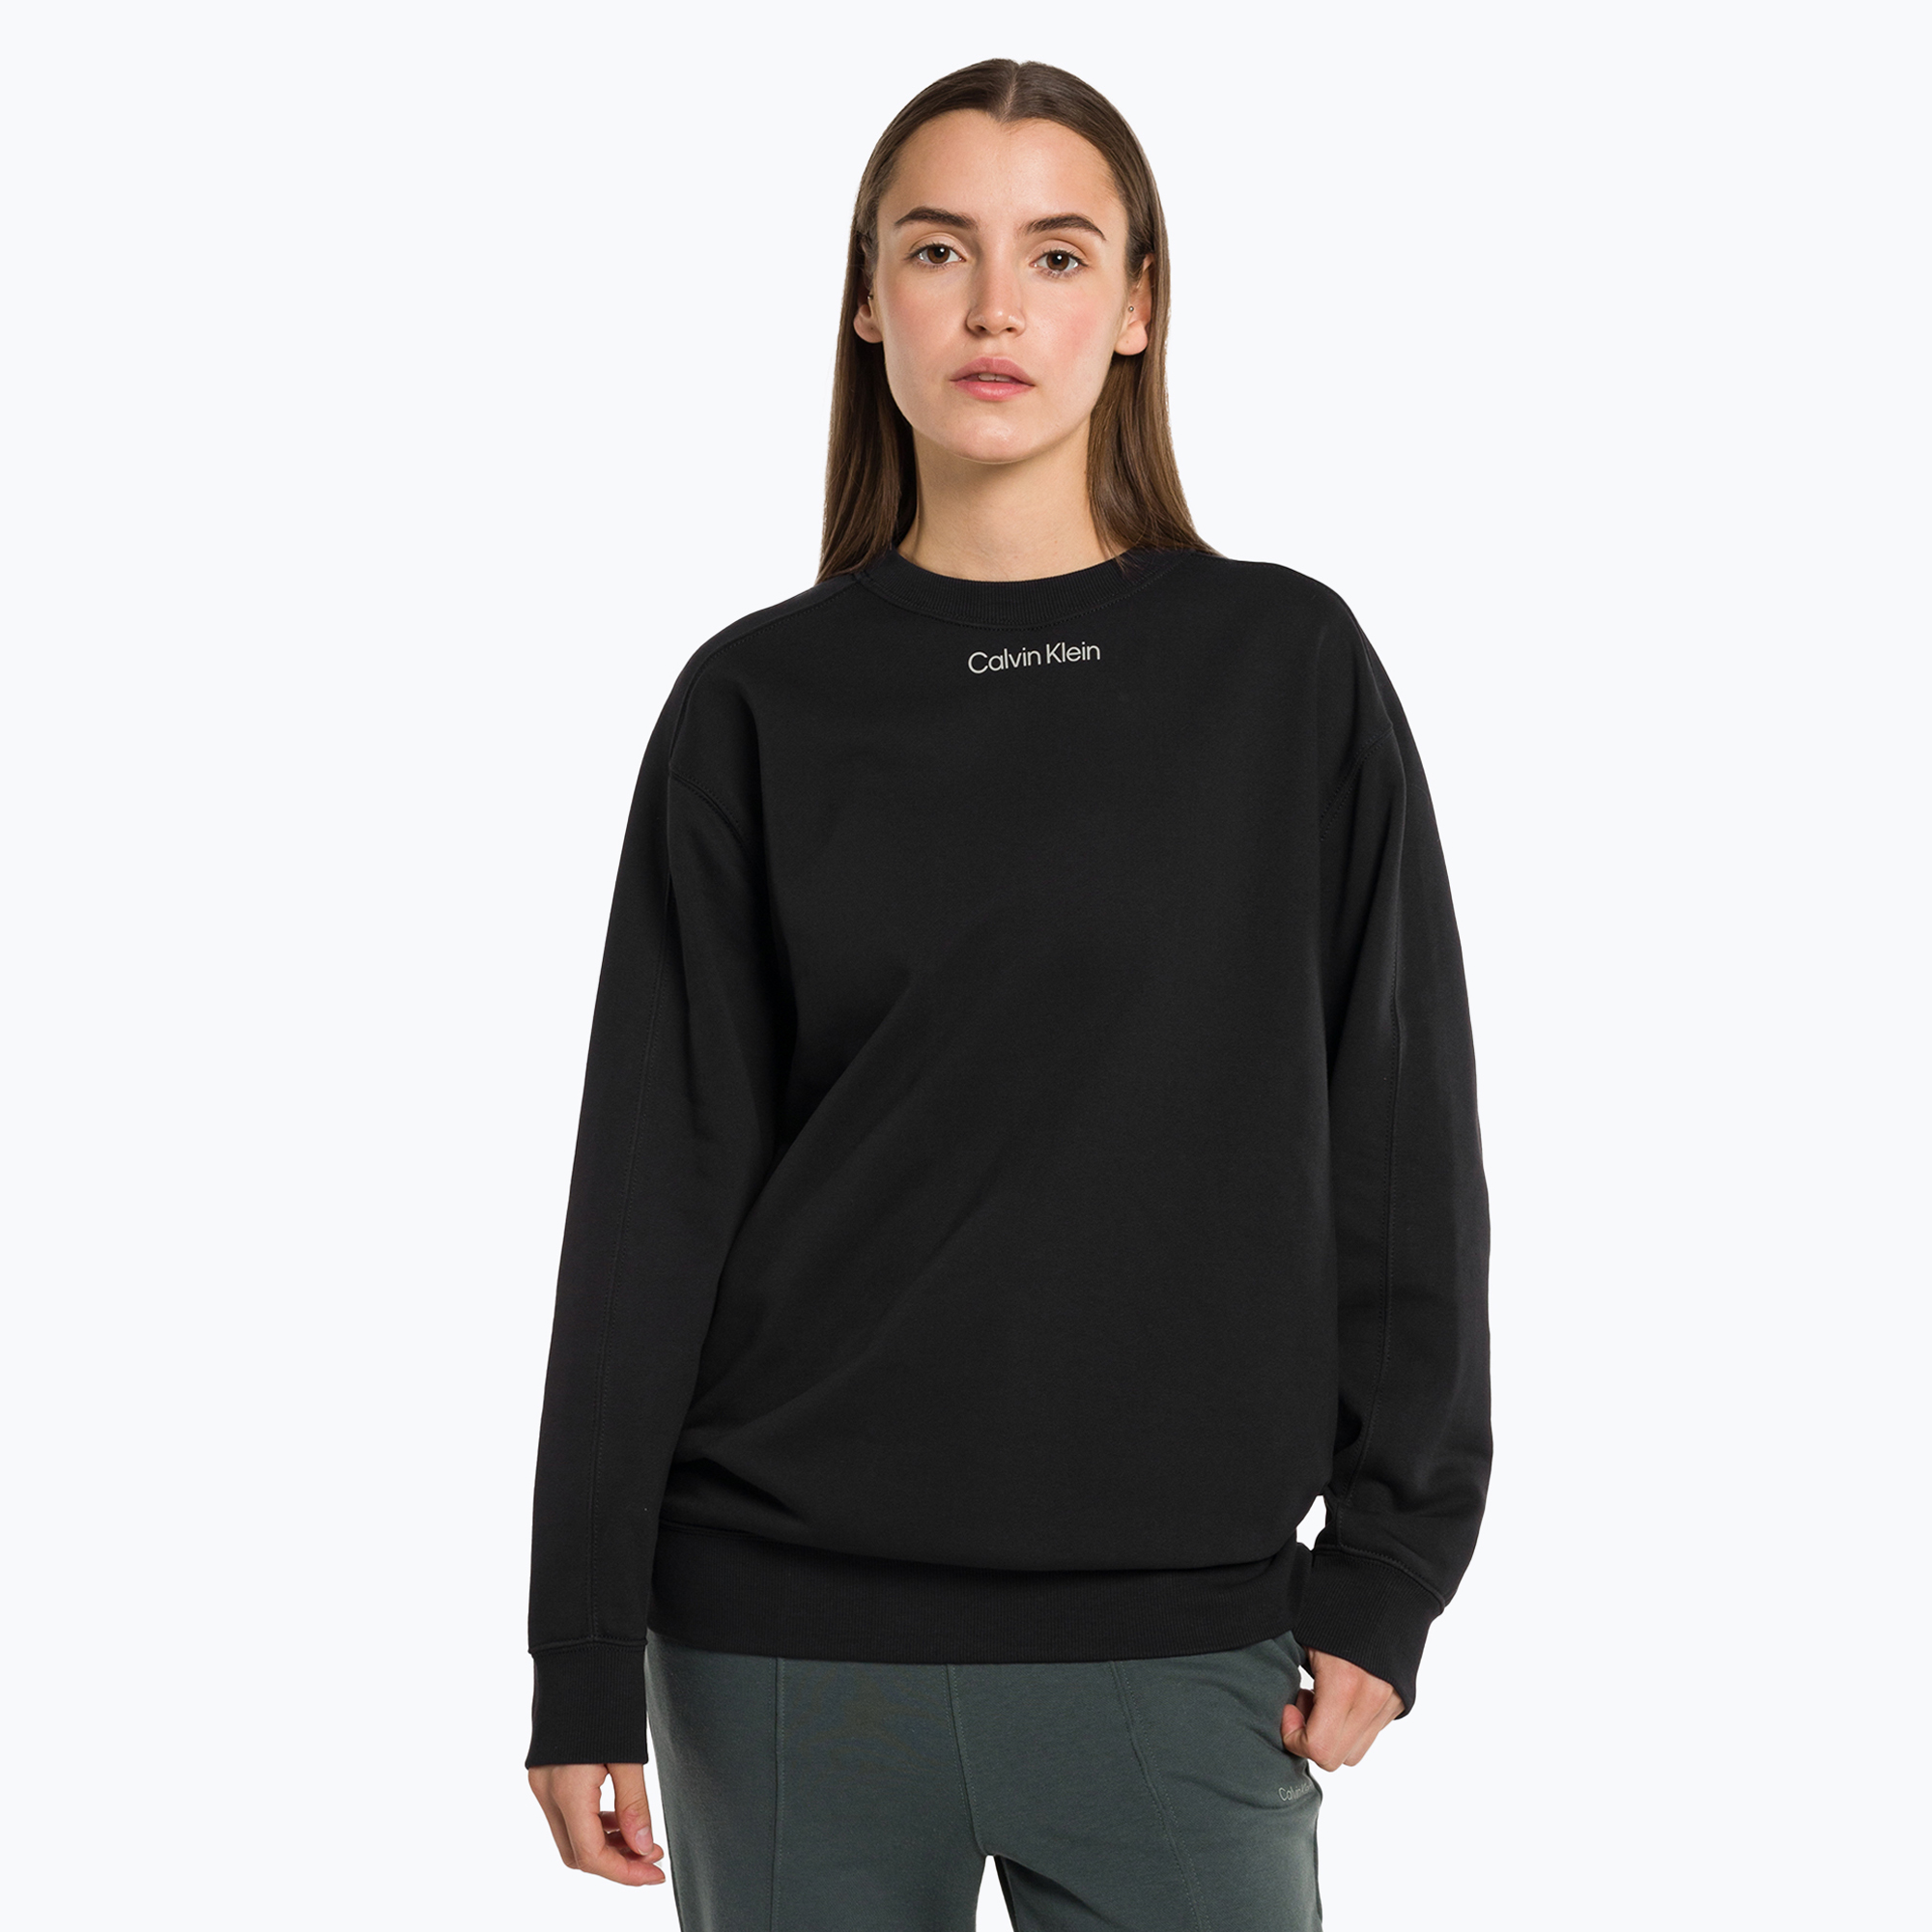 Дамски пуловер Calvin Klein BAE black beauty суитшърт